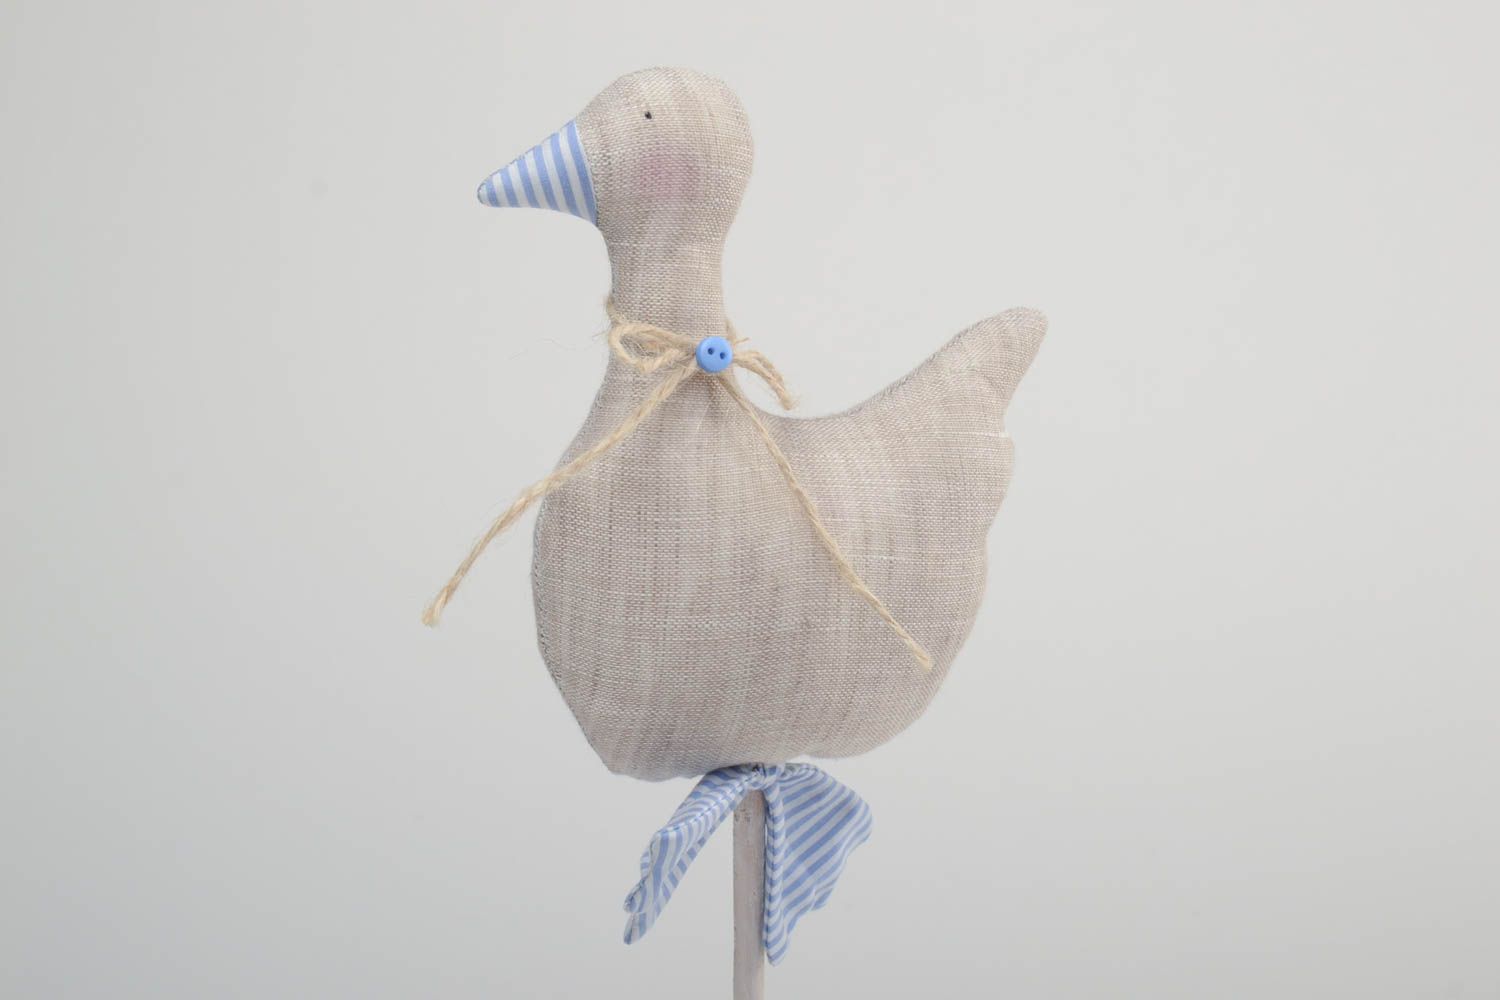 Textil Figur handmade für Dekor aus Leinen auf Holzbasis weiche Ente wunderbar foto 3